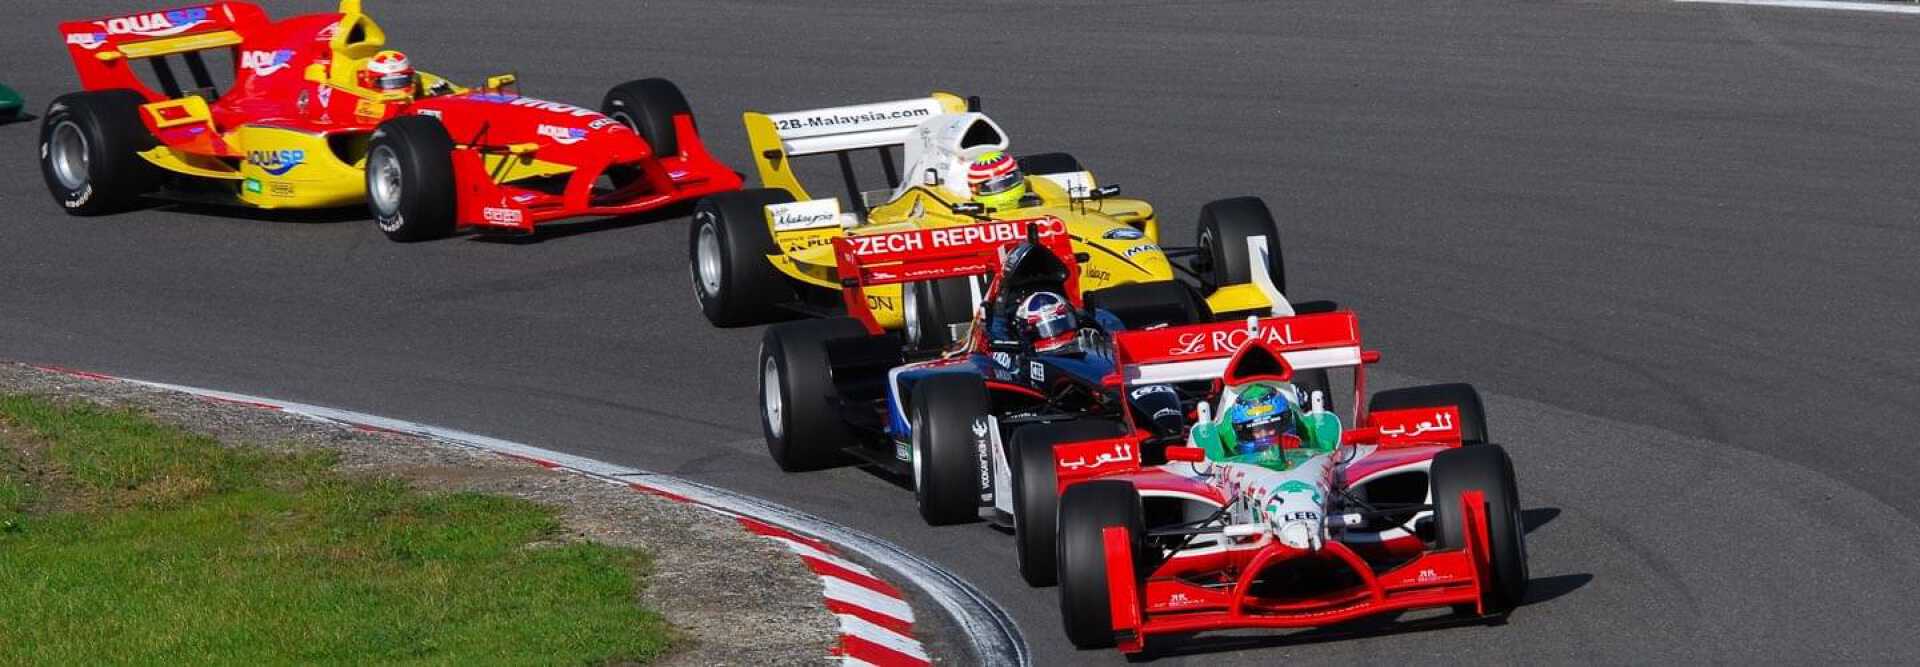 4 voitures de course rouges et jaunes au Grand Prix de Formule 1 Spielberg en Autriche